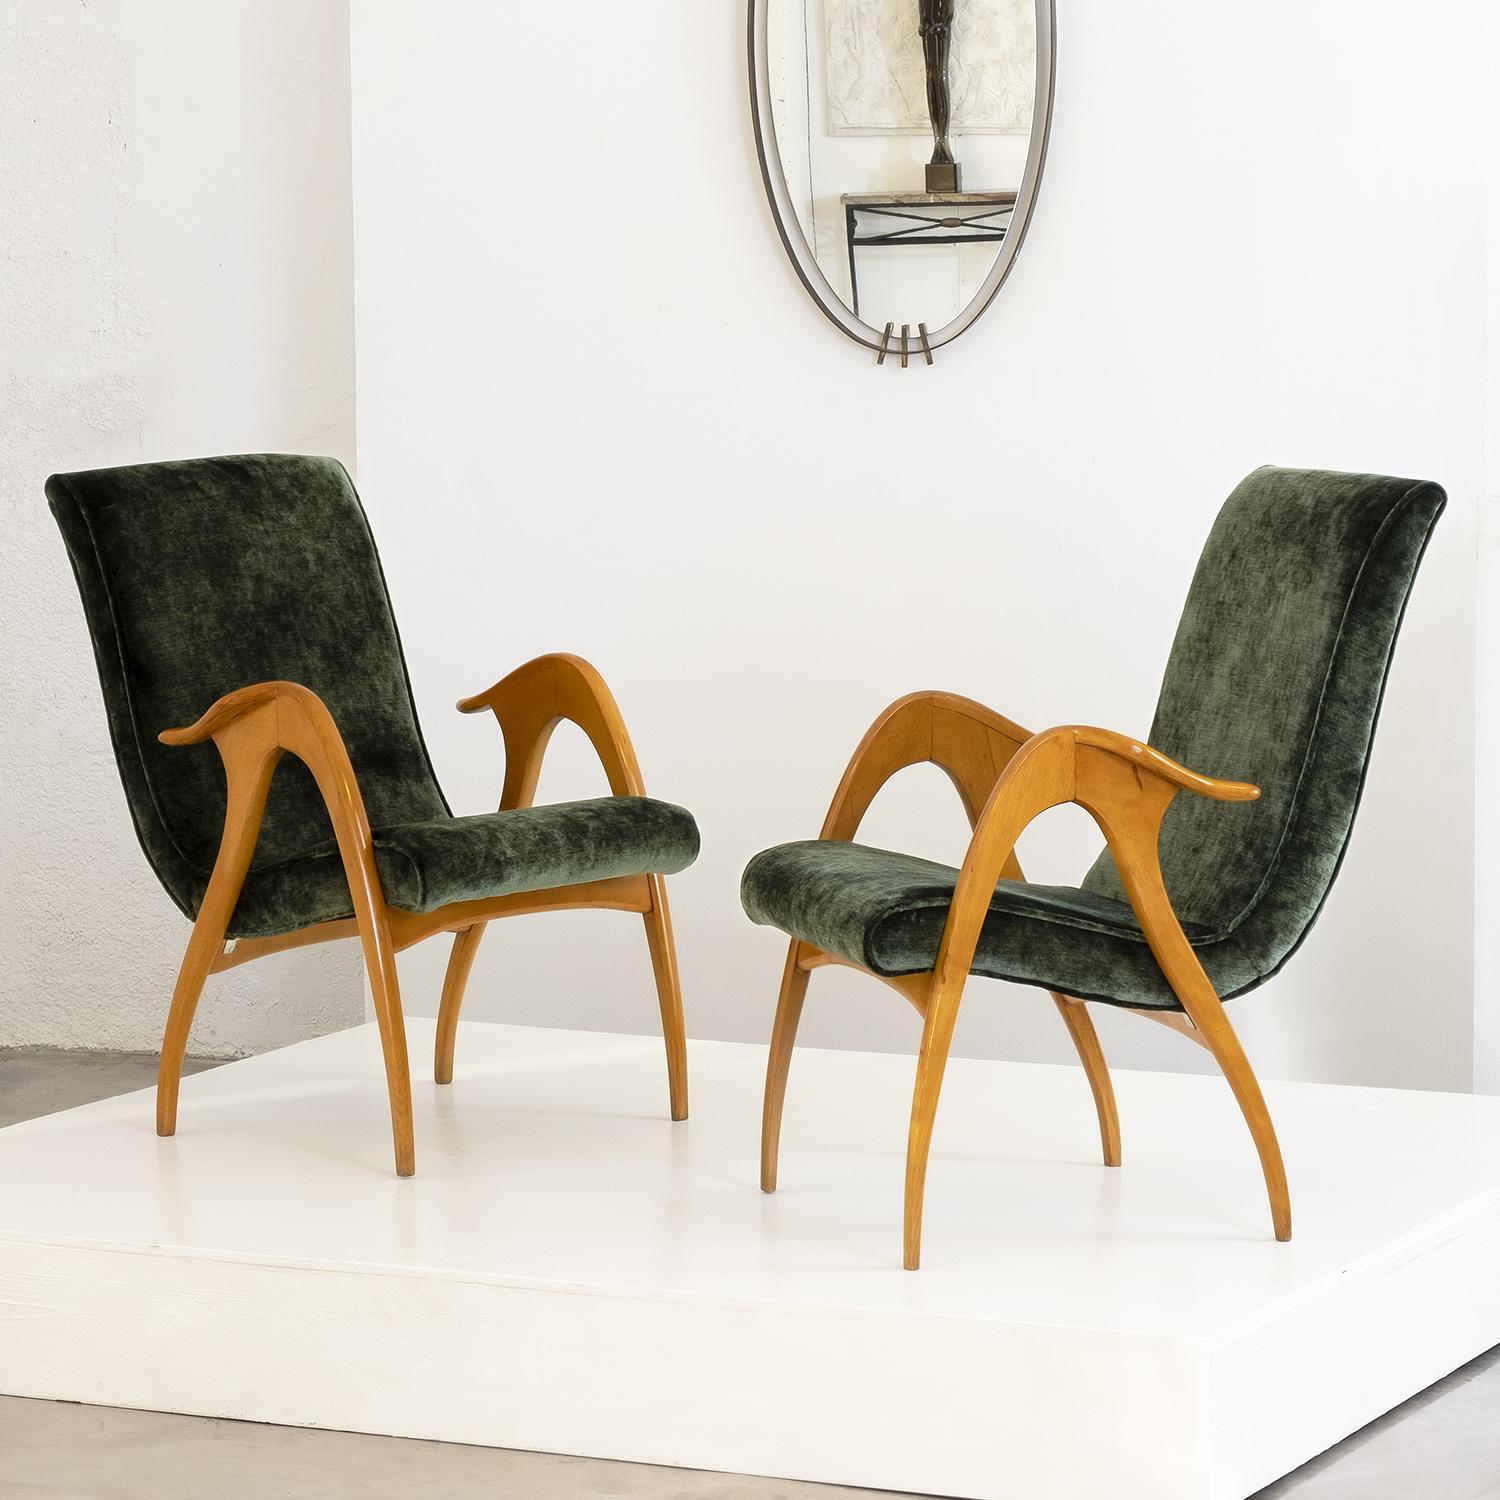 Ein Paar italienische Loungesessel aus der Mitte des Jahrhunderts, handgefertigt aus poliertem Buchenholz, entworfen und hergestellt von Malatesta & Masson, in gutem Zustand. Die Rückenlehne der skulpturalen Sessel ist geschwungen mit schlanken,